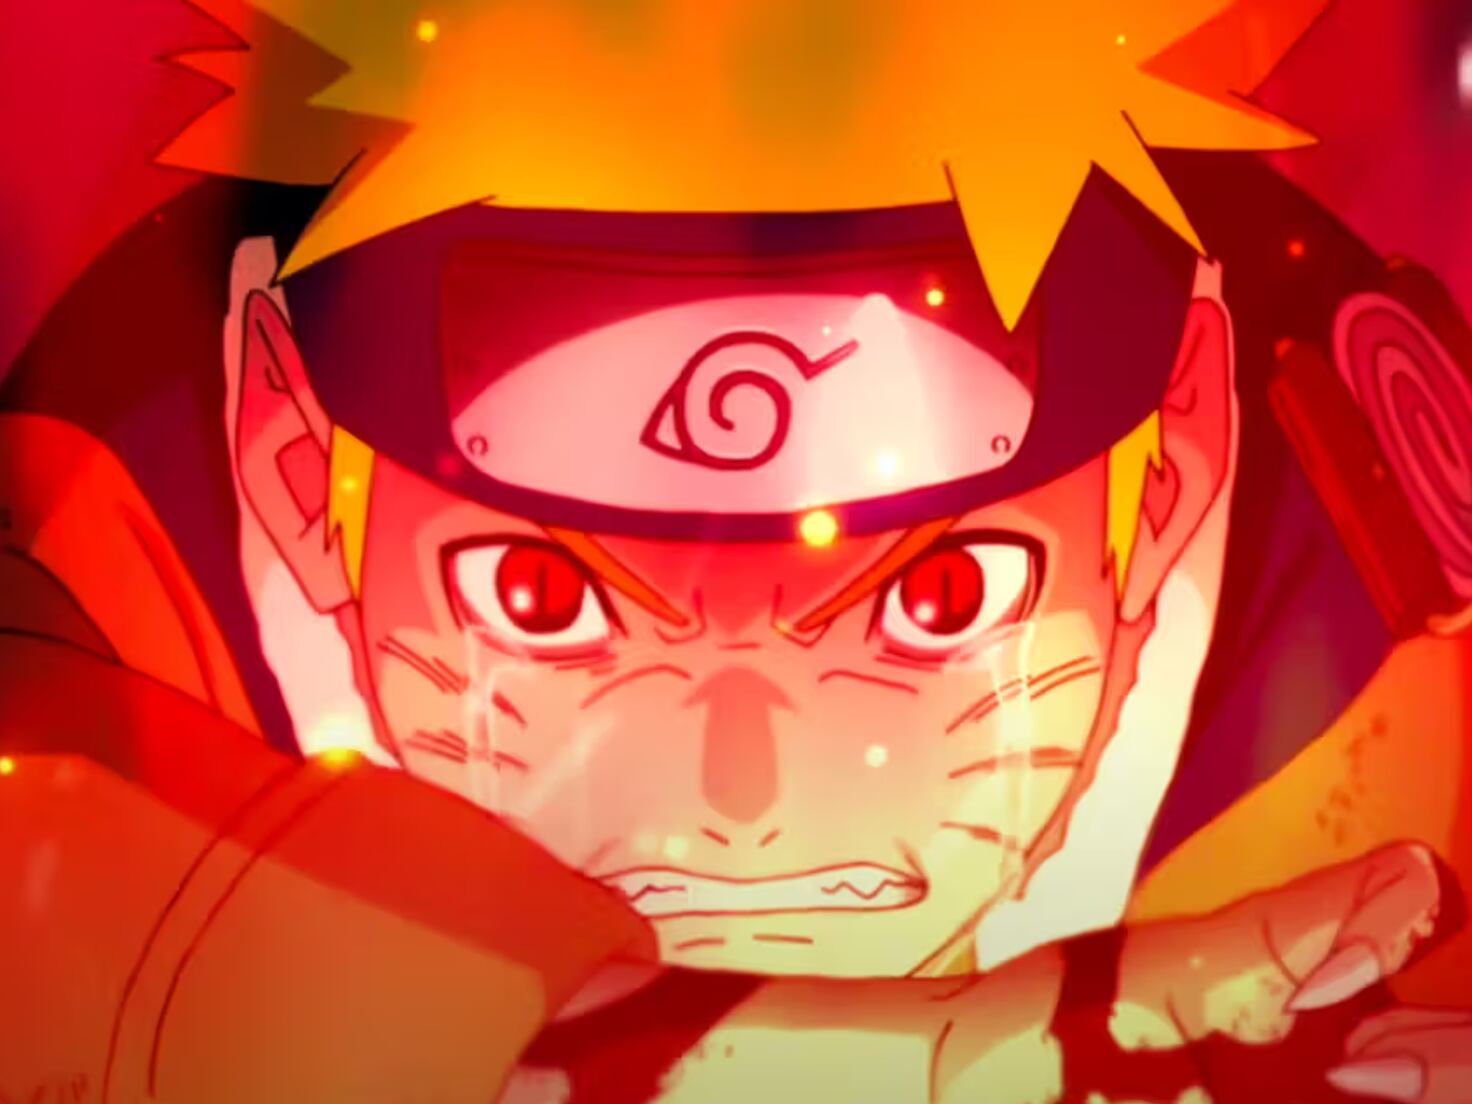 Naruto irá lançar novos episódios para comemorar seu aniversário de 20 anos  